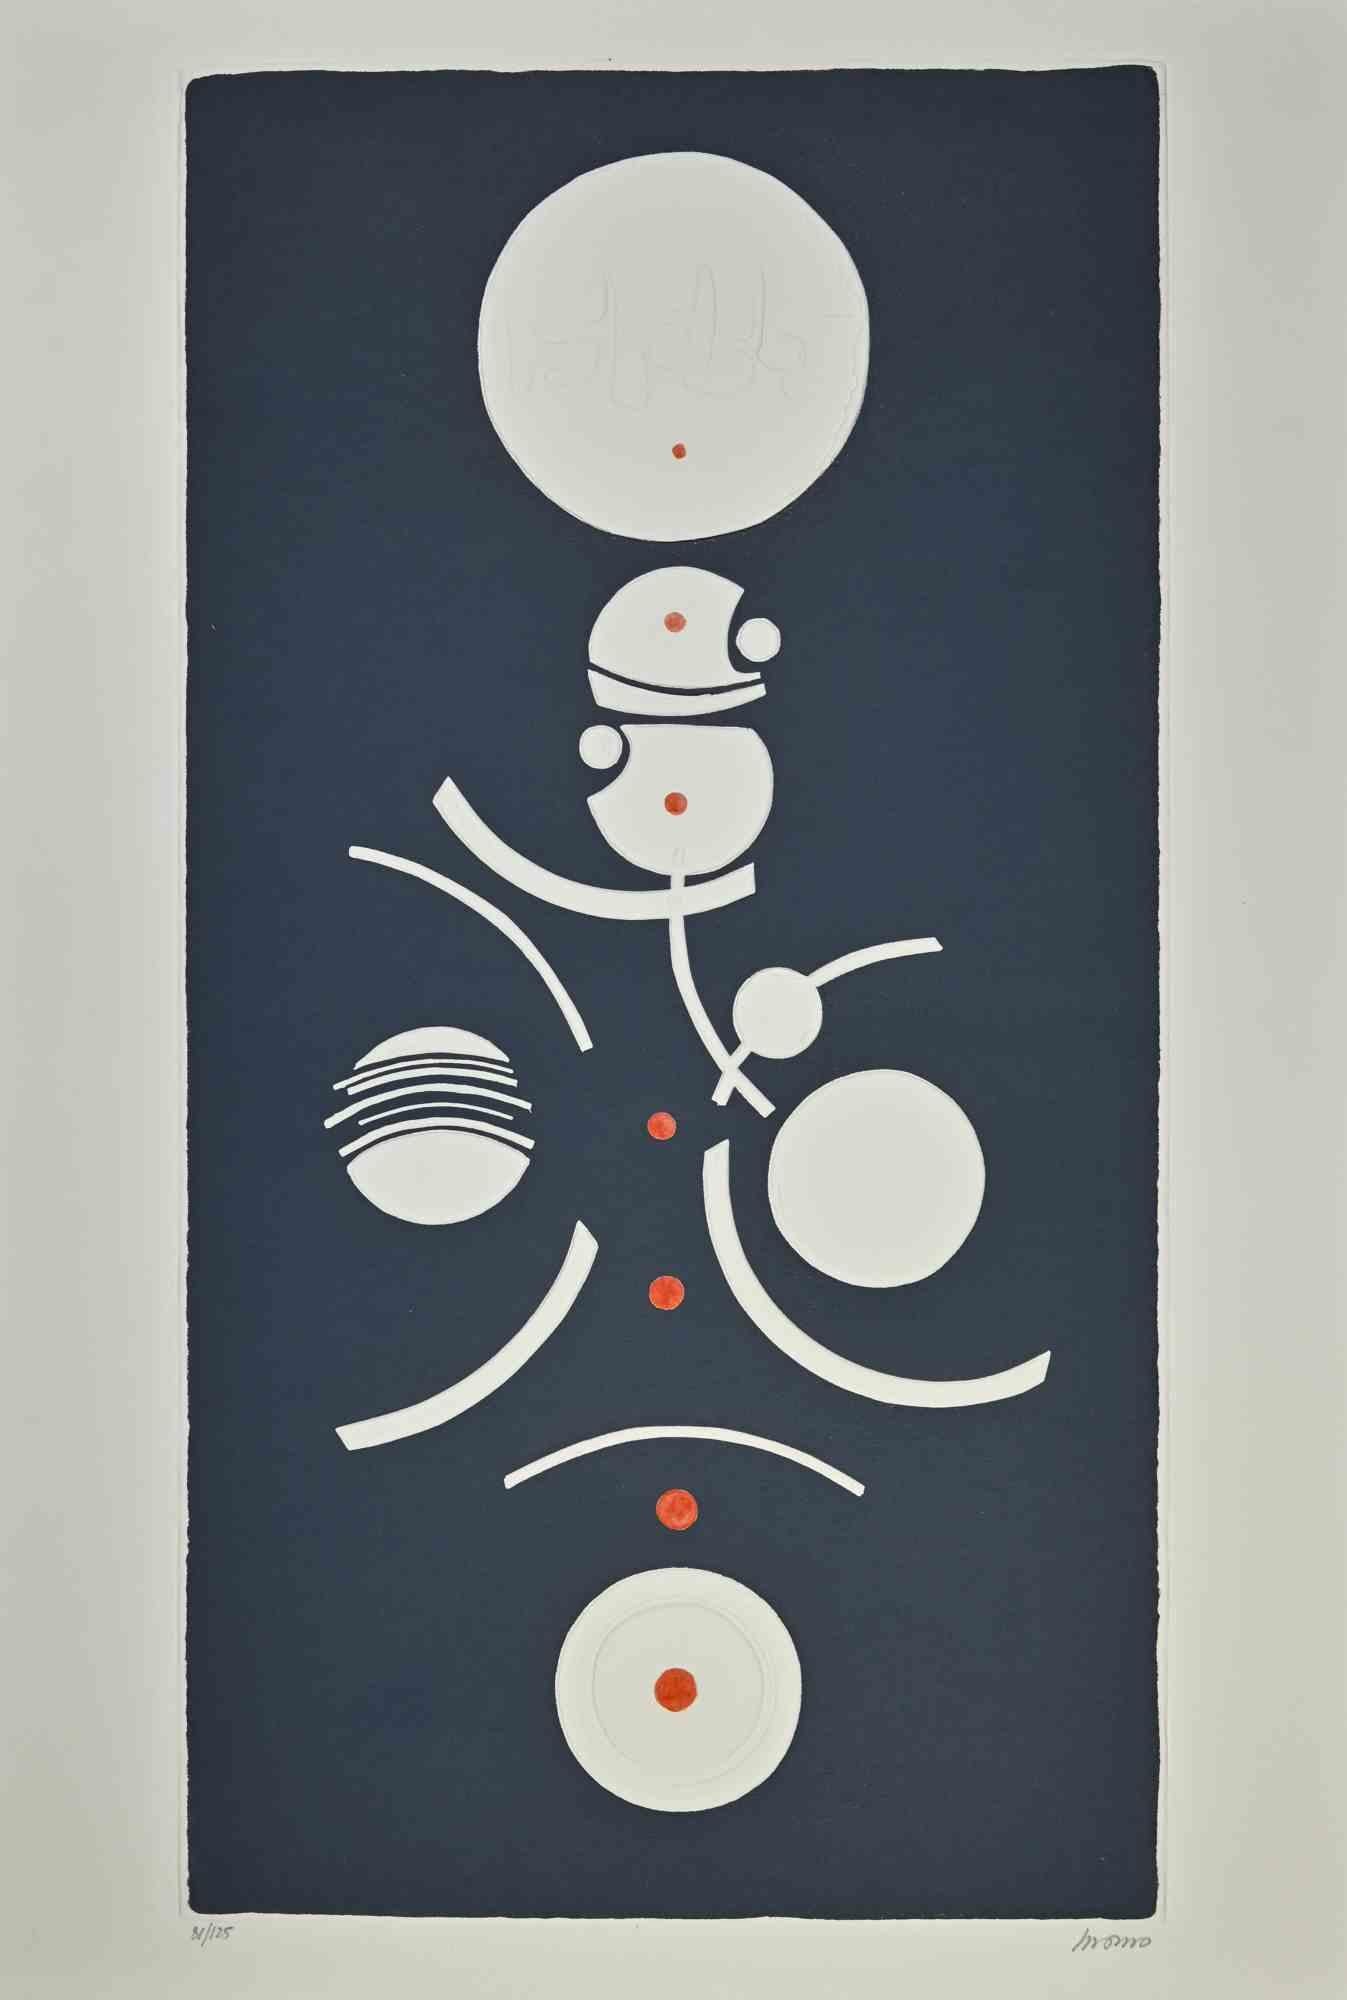 Circles composition ist ein Kunstwerk, das Momo in den 1990er Jahren geschaffen hat.

Farblithografie in Mischtechnik, 73 x 53 cm. 

Ausgabe 81/125

Gute Bedingungen



Momo, manchmal auch als "MOMO" bezeichnet (geboren 1974 in San Francisco), ist